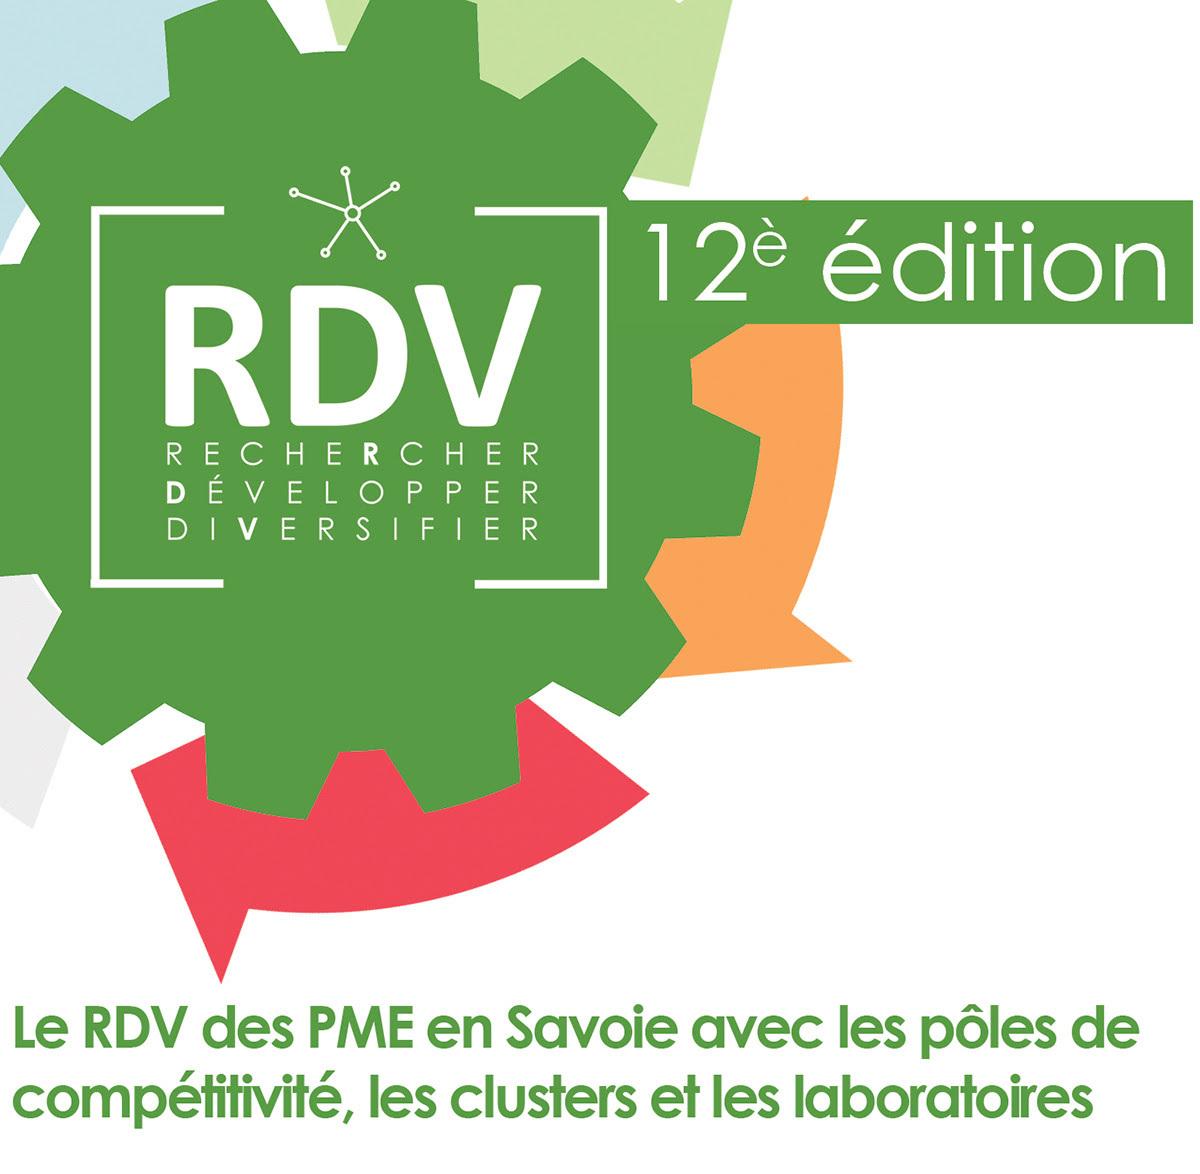 Save the date : Les RDV Rechercher, Développer, Diversifier - 12ème édition en Savoie